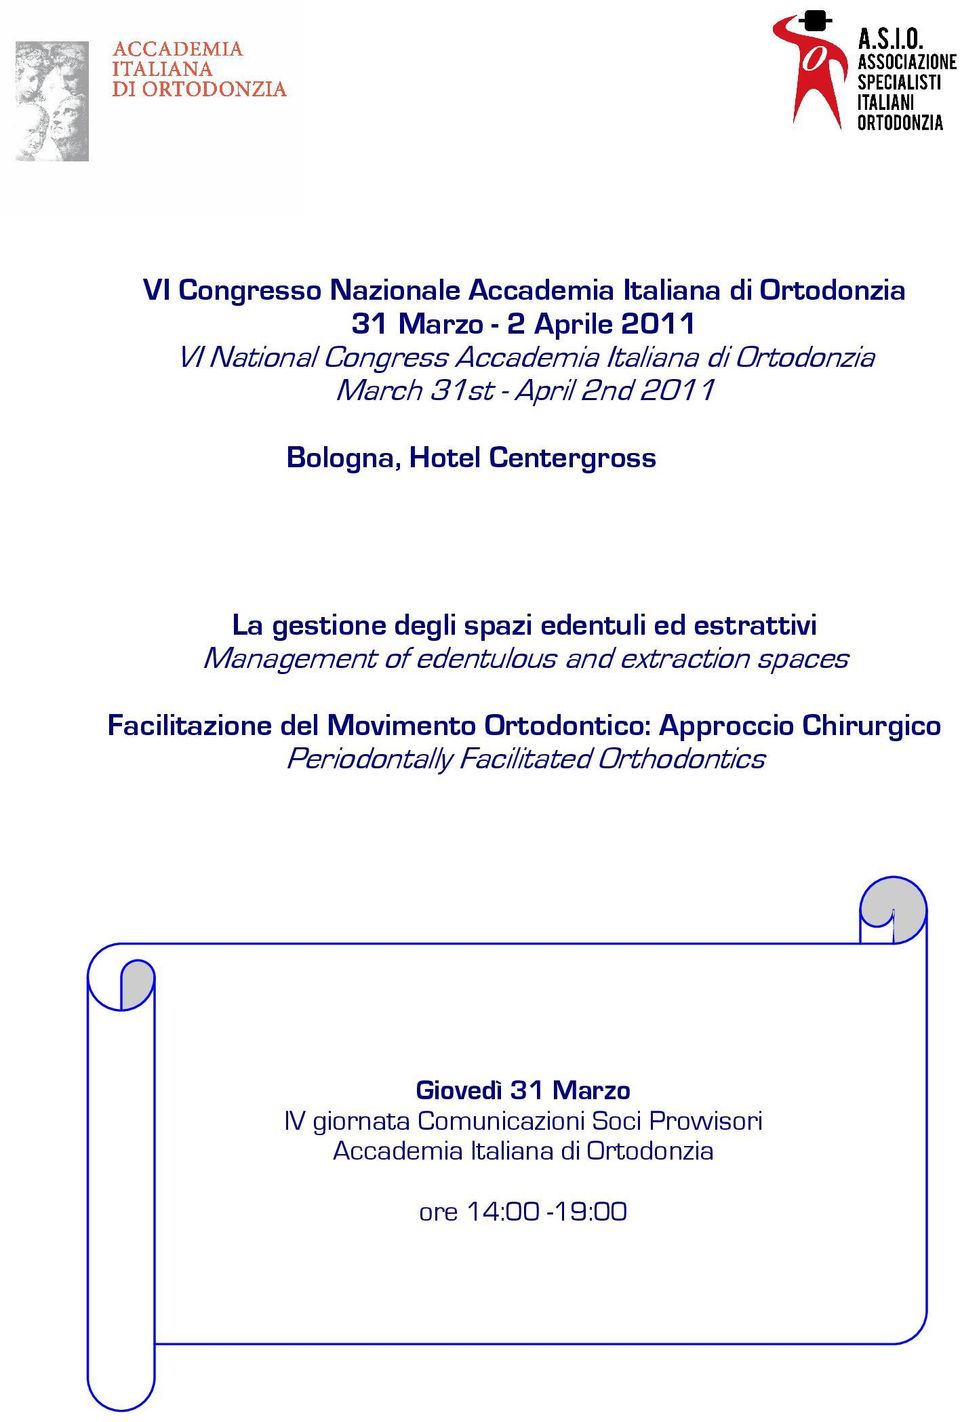 Management of edentulous and extraction spaces Facilitazione del Movimento Ortodontico: Approccio Chirurgico Periodontally